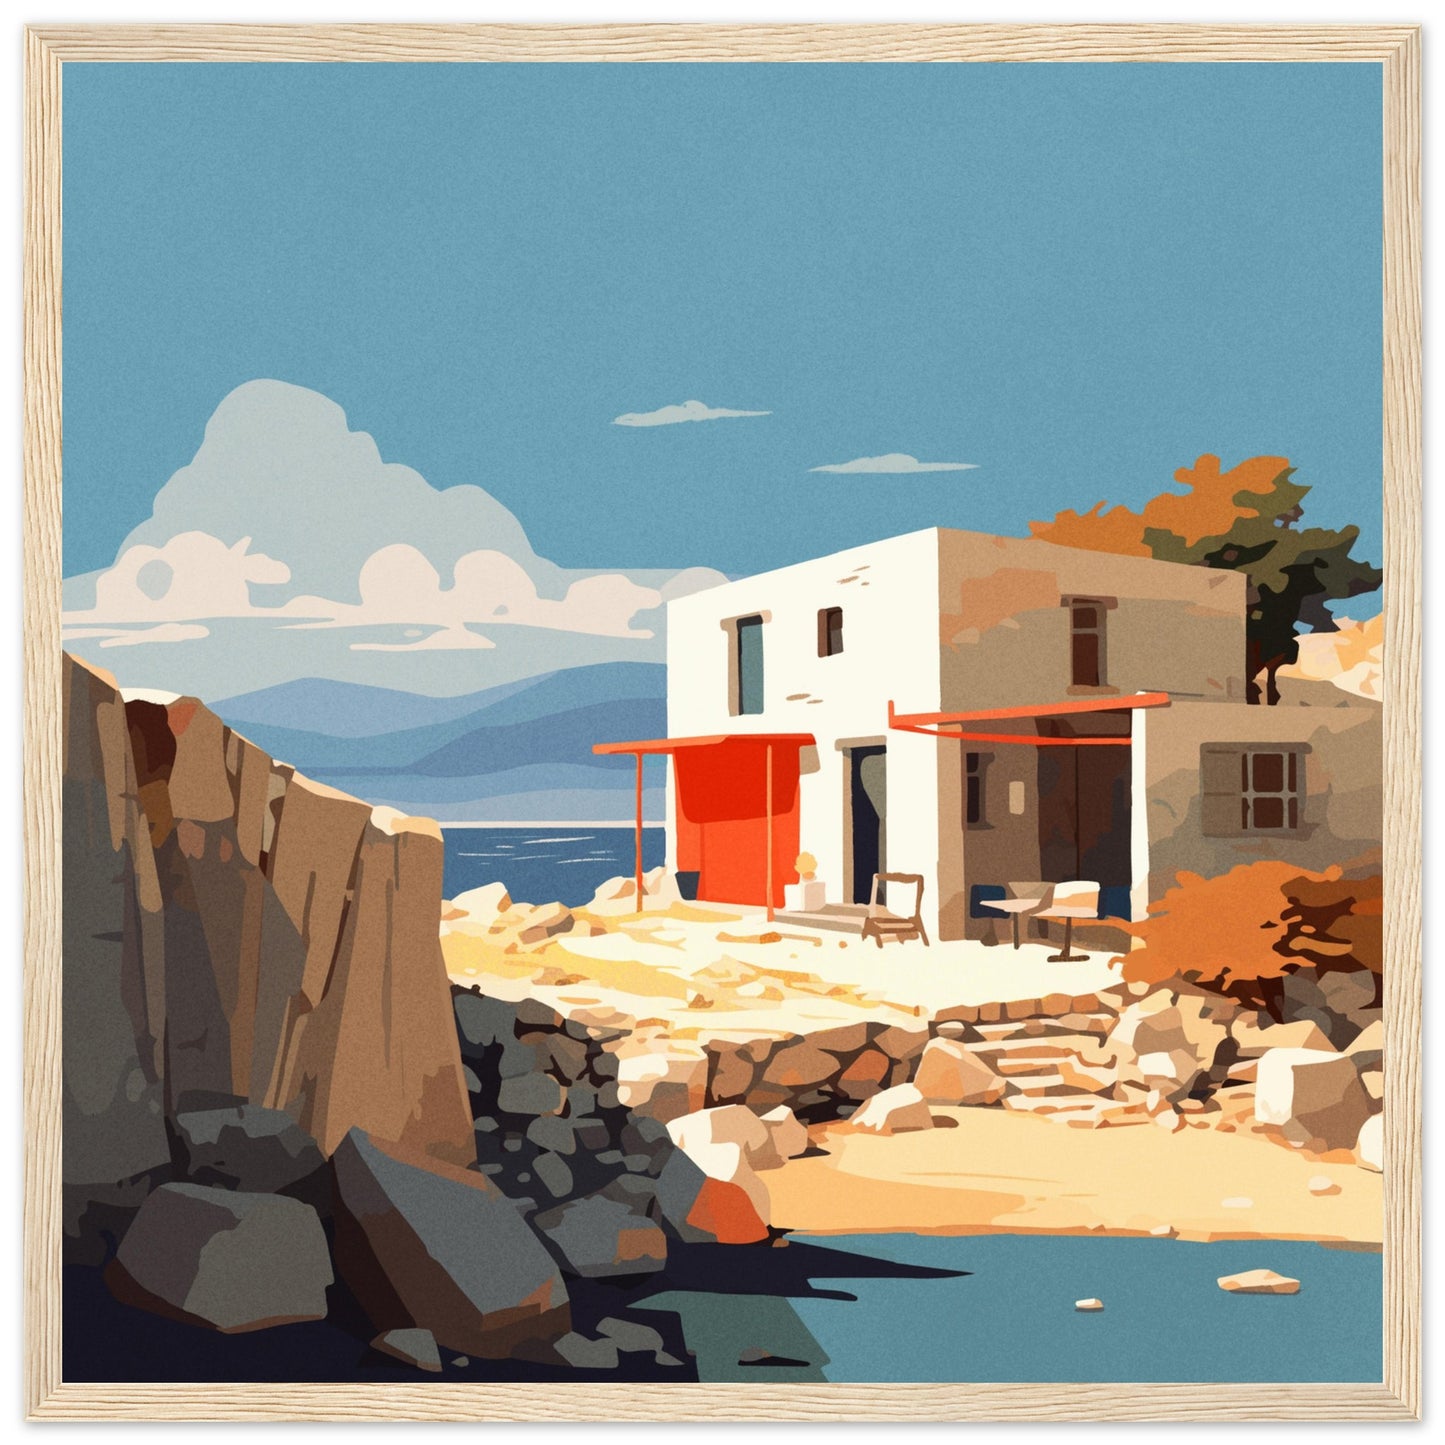 Safe Places - Spring Mediterranean Island  - Wooden Framed Poster